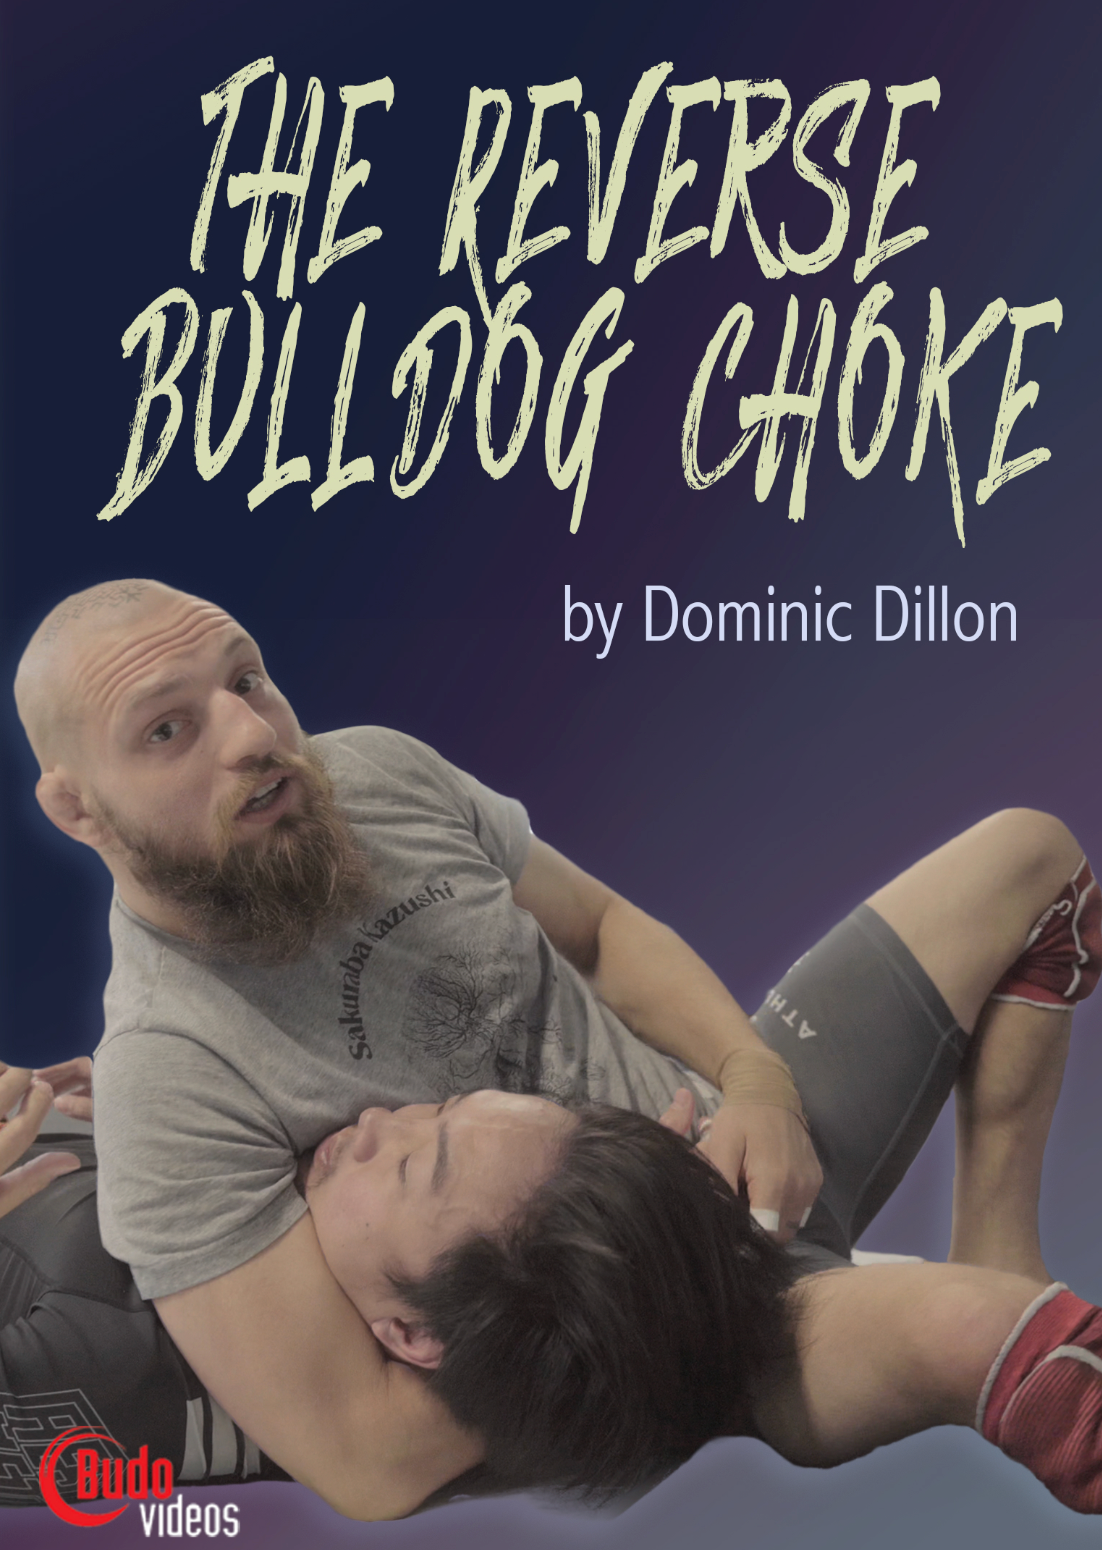 The Reverse Bulldog Choke de Dominic Dillon (bajo demanda)